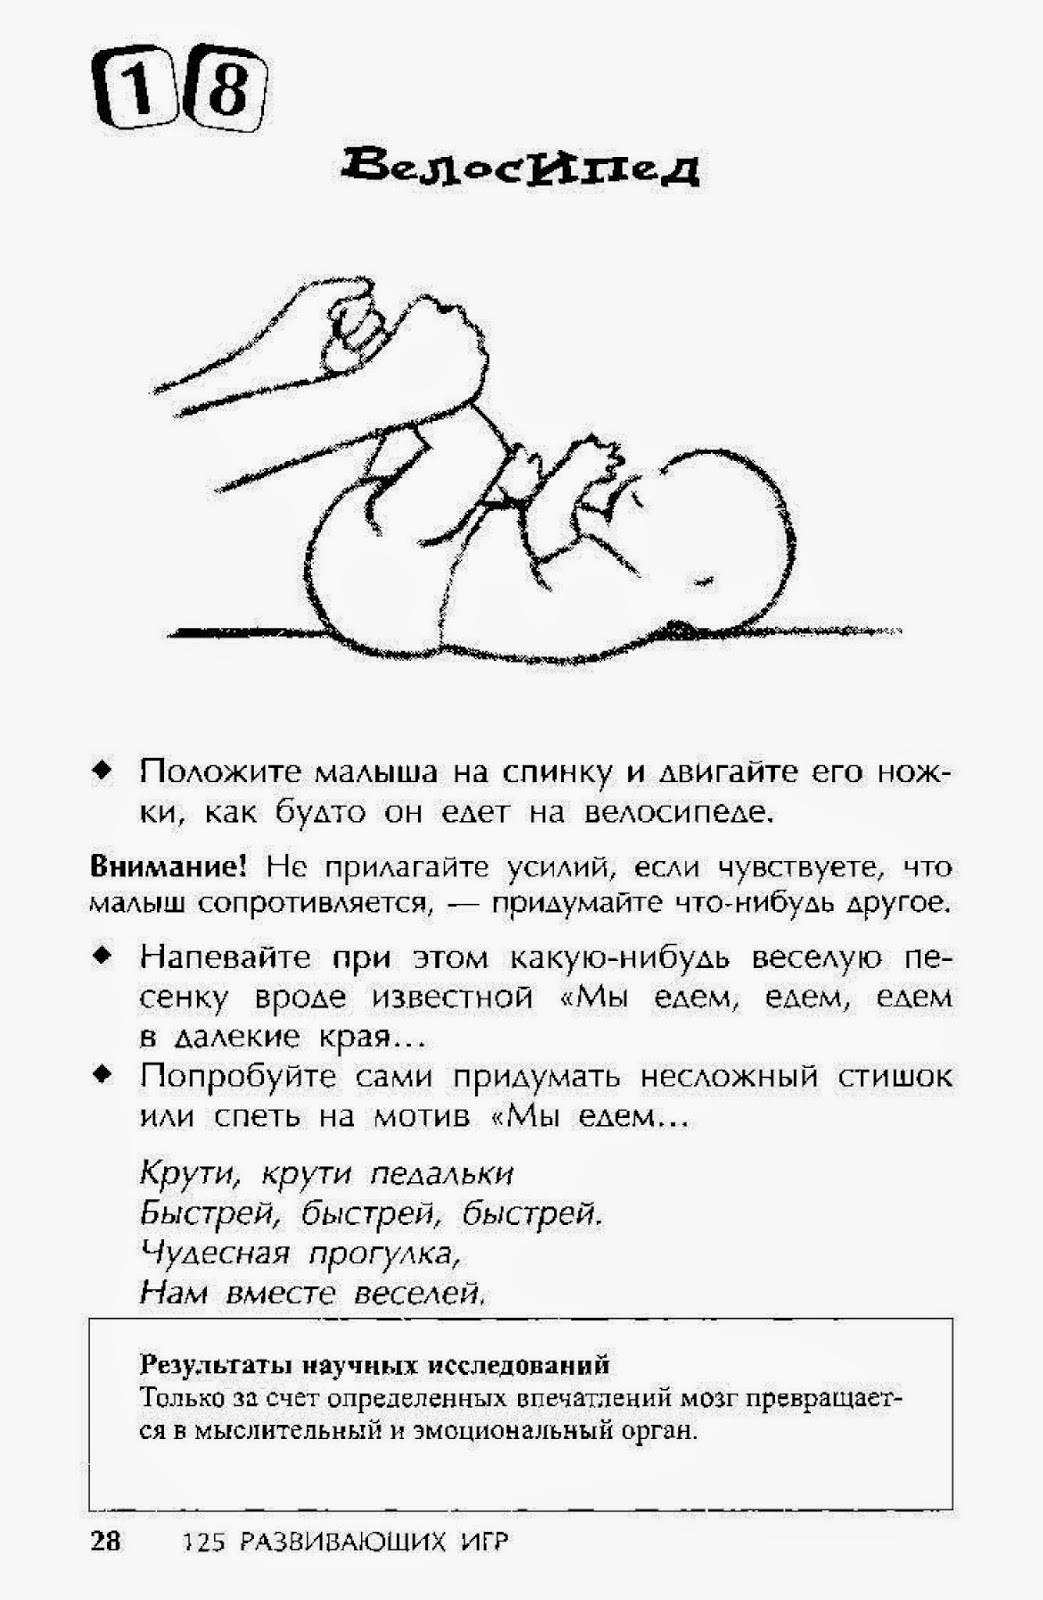 Как уложить ребенка на сон. Как можно ребенка уложить спать. Укладываем ребёнка спать новорожденного. Уложить ребенка спать в 3 месяца. Как ложить ребенка в 3 месяца.